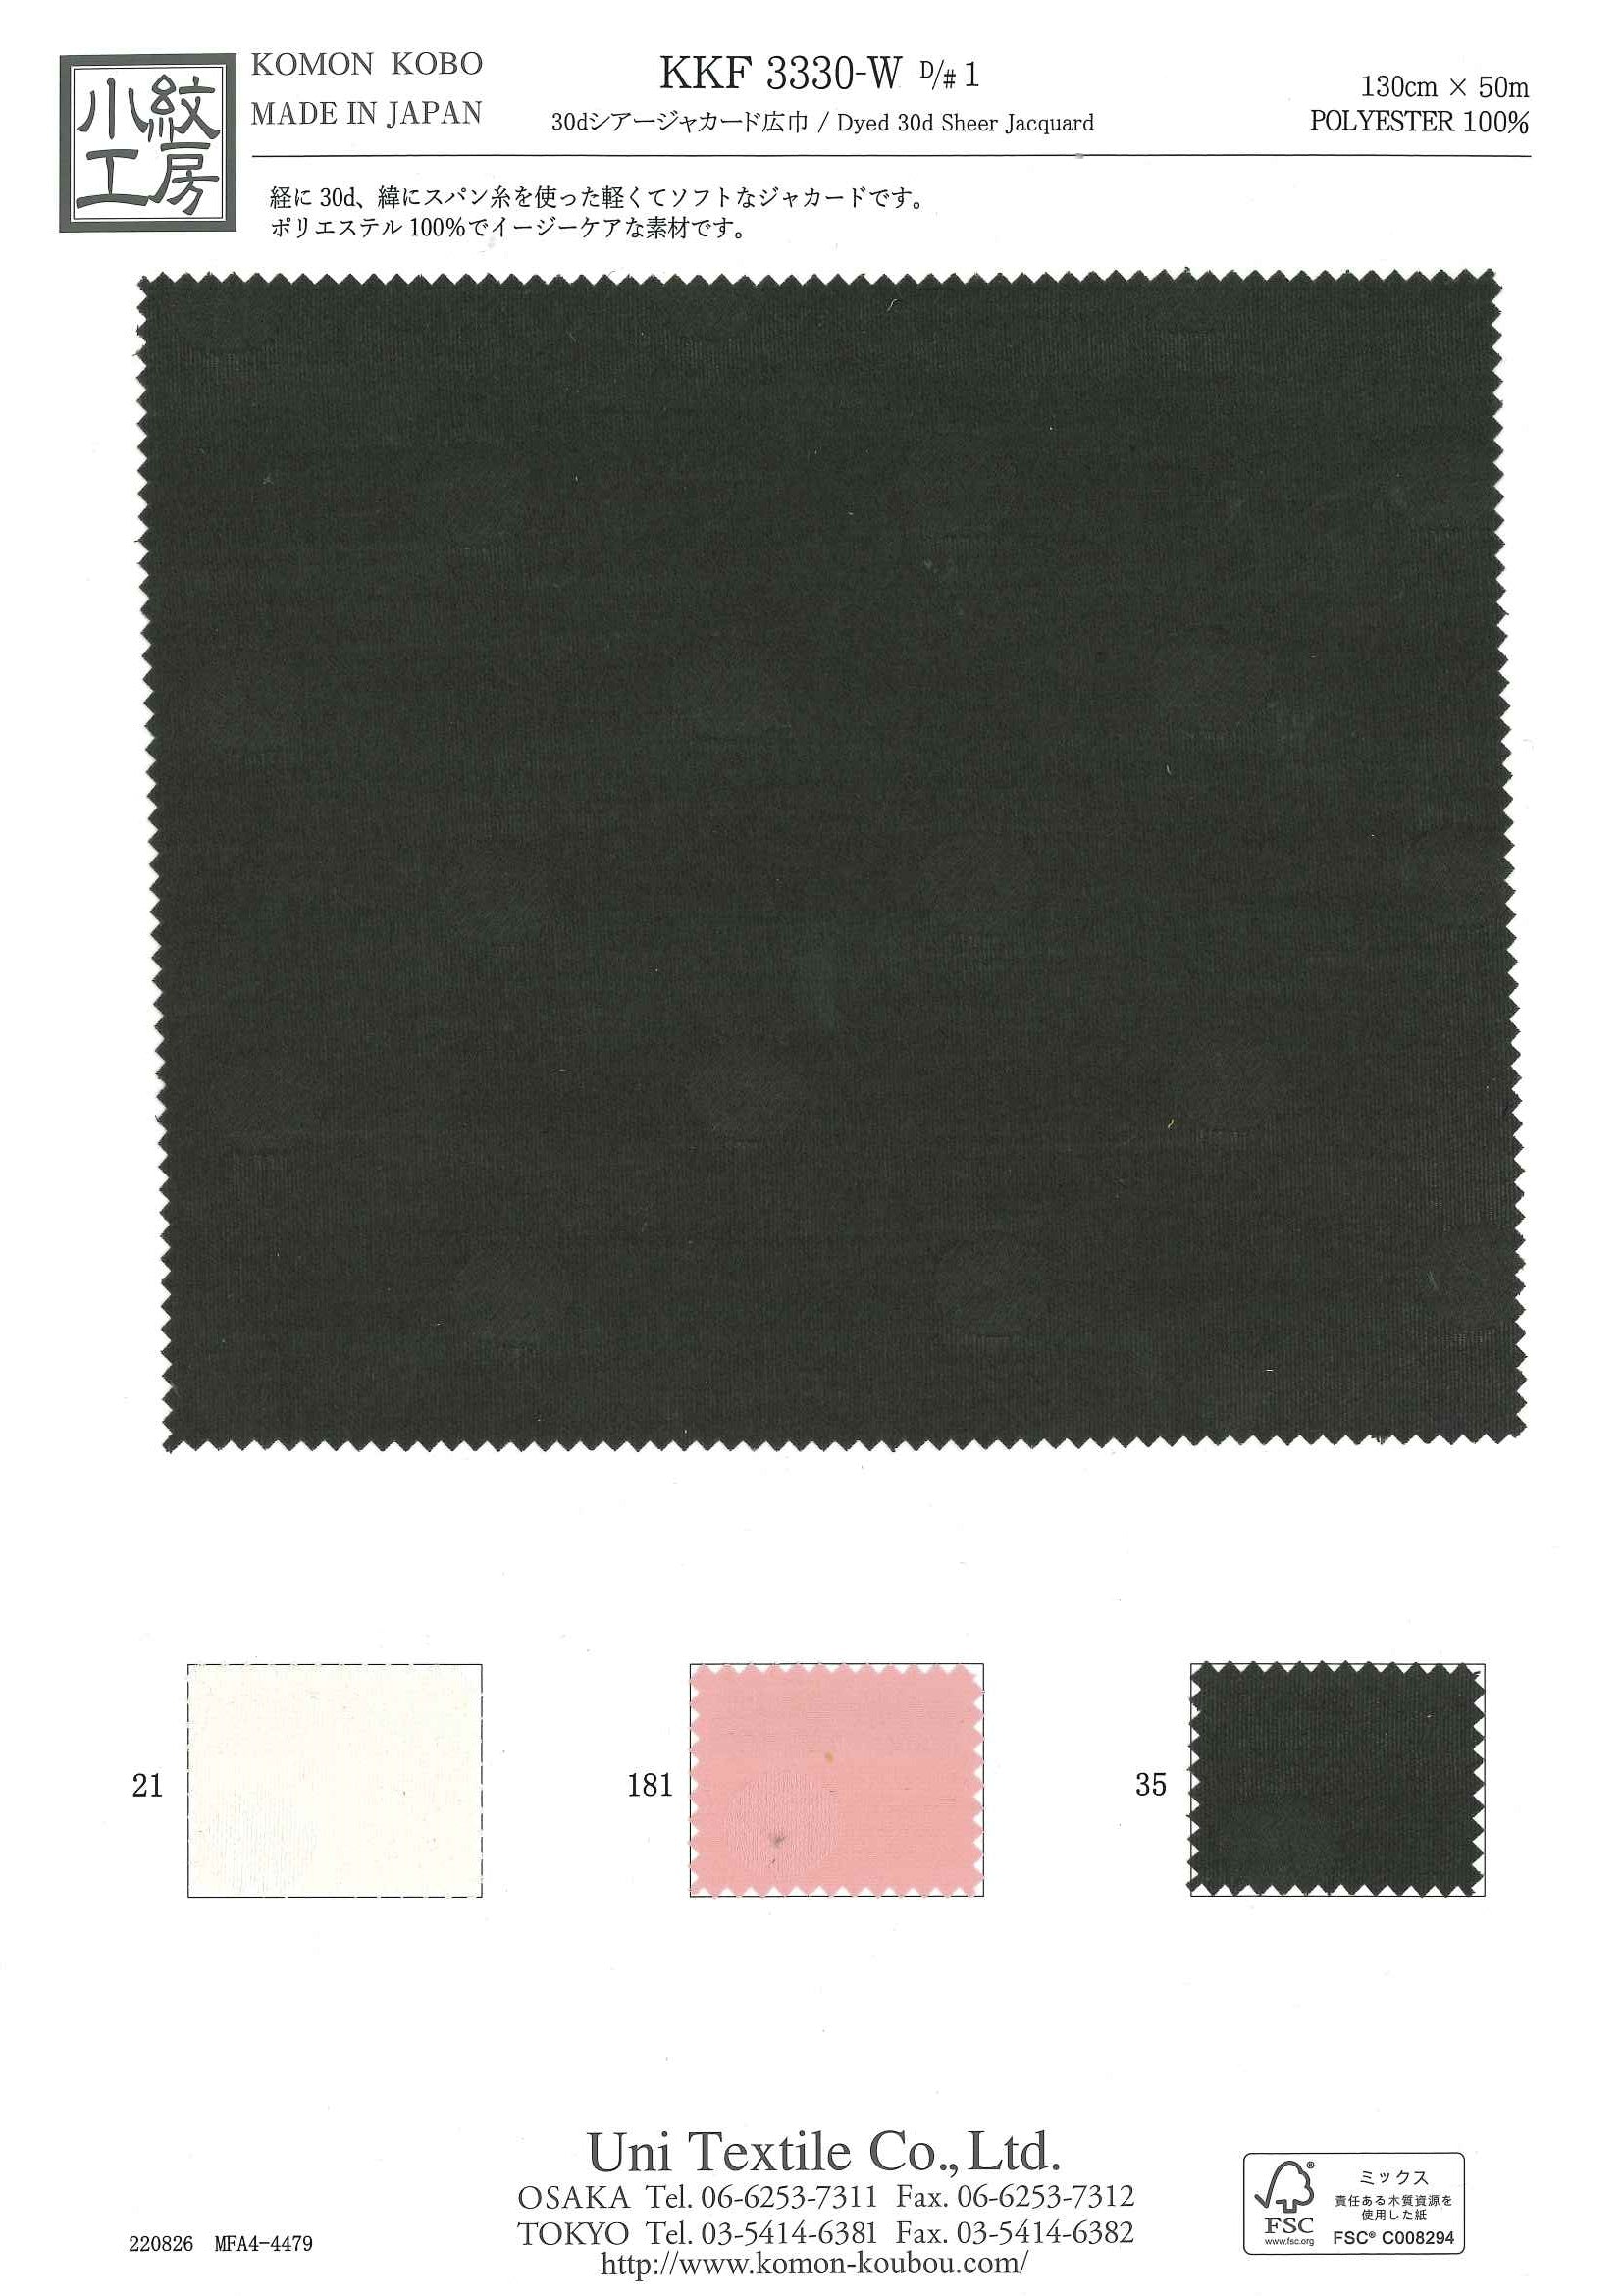 KKF3330-W [ D/#1 ]３０ｄシアージャカード広巾